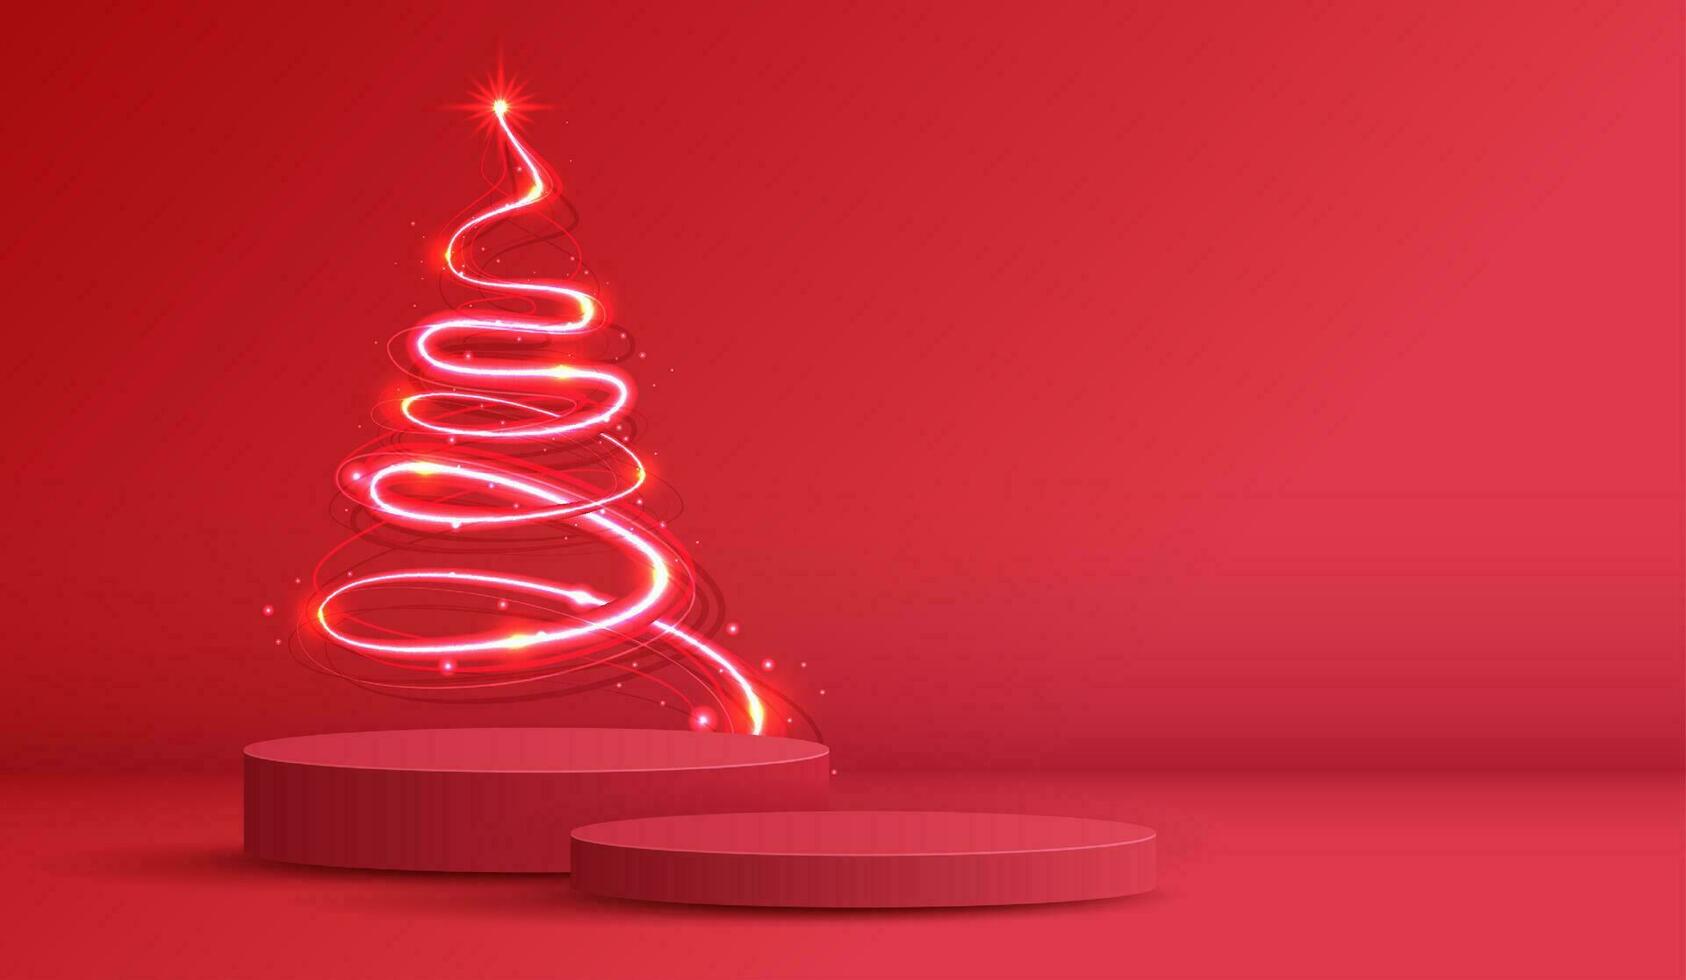 Podium gestalten zum Show kosmetisch Produkt Anzeige zum Weihnachten Tag oder Neu Jahre. Stand Produkt Vitrine auf rot Hintergrund mit Baum Weihnachten, golden Ball und Licht. Vektor Design.